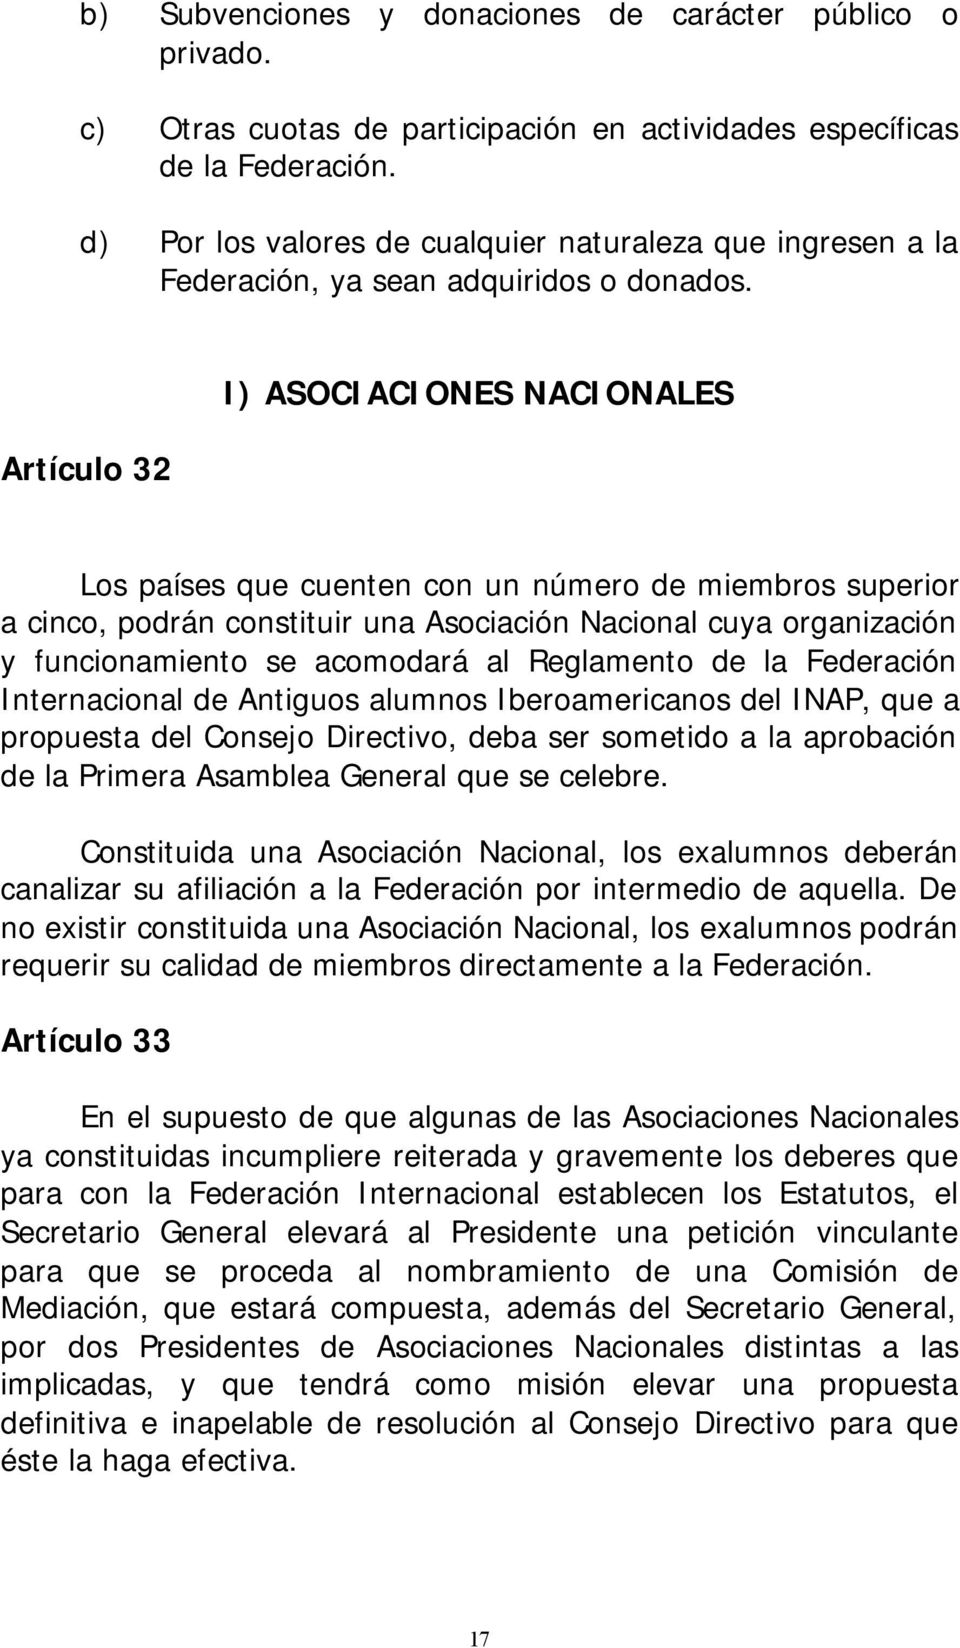 Artículo 32 I) ASOCIACIONES NACIONALES Los países que cuenten con un número de miembros superior a cinco, podrán constituir una Asociación Nacional cuya organización y funcionamiento se acomodará al